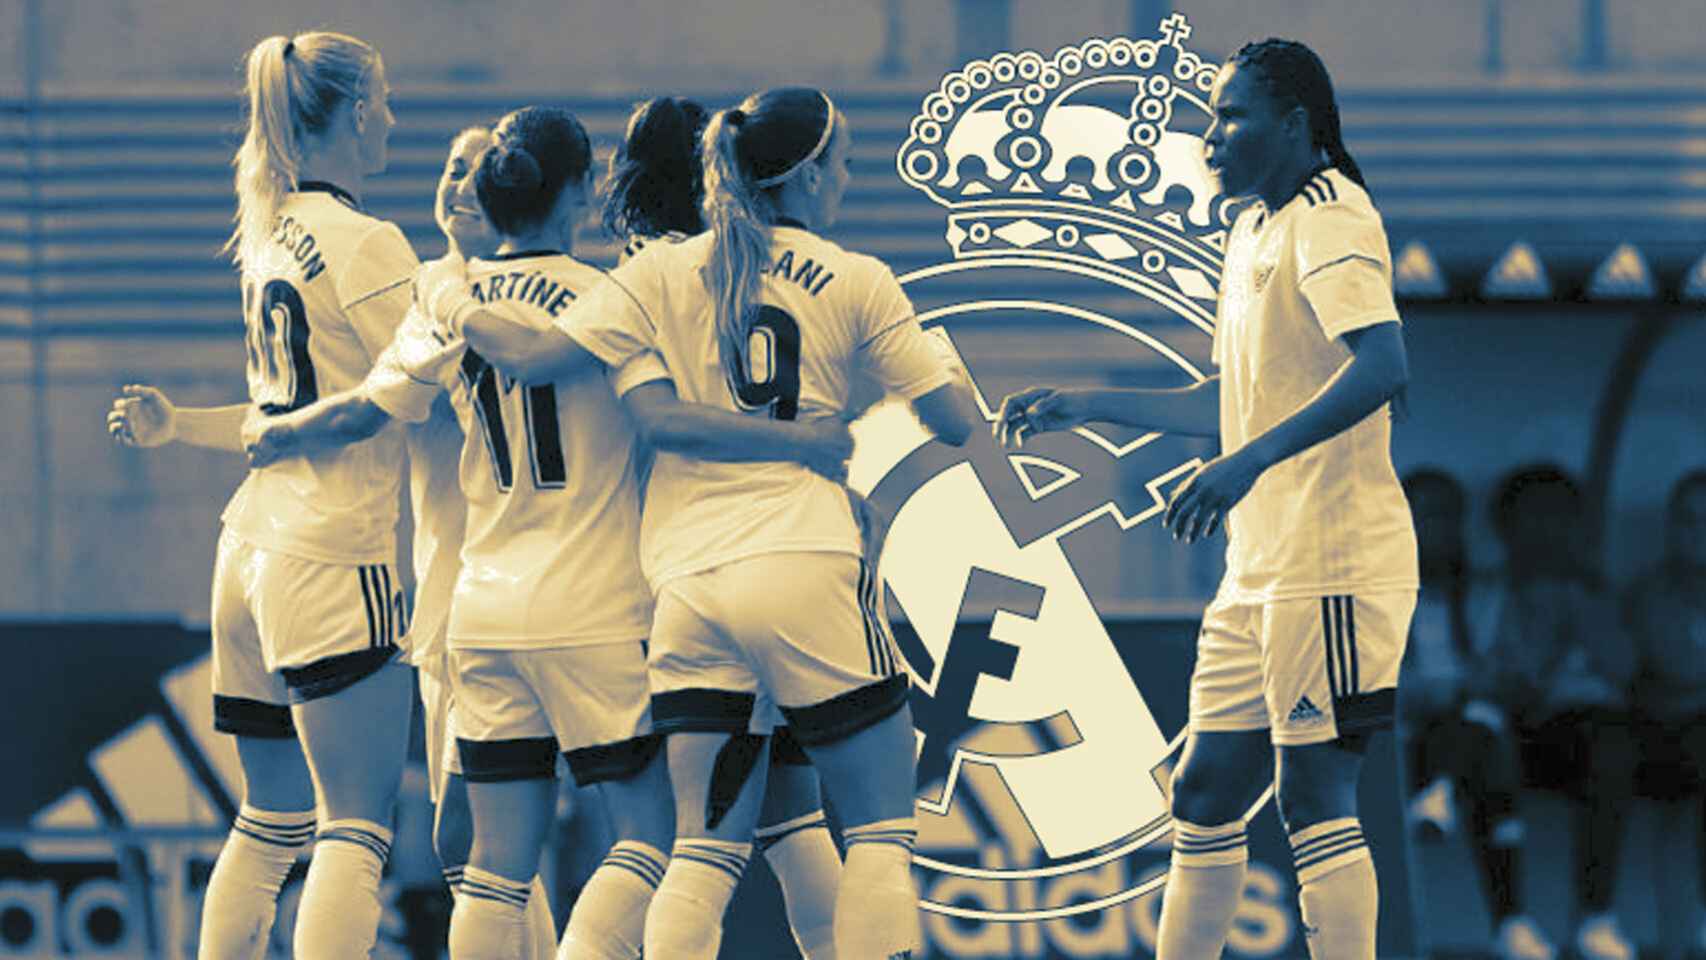 Arranca el Real Madrid Femenino: el equipo que llega al fútbol para ser un nuevo referente